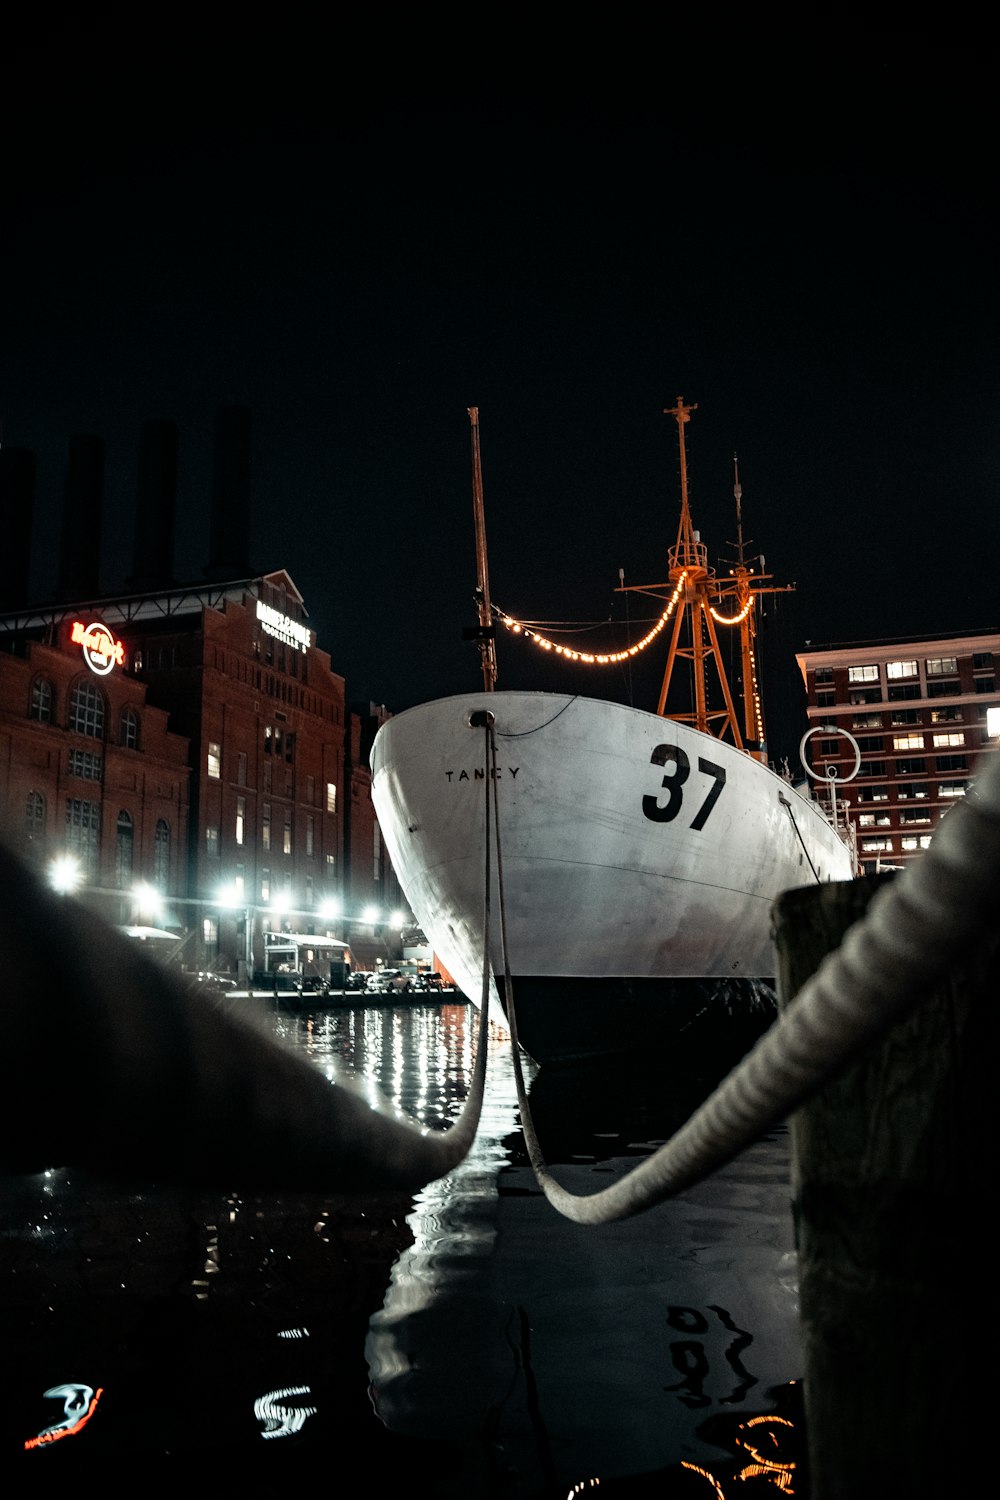 Navire blanc sur le quai pendant la nuit